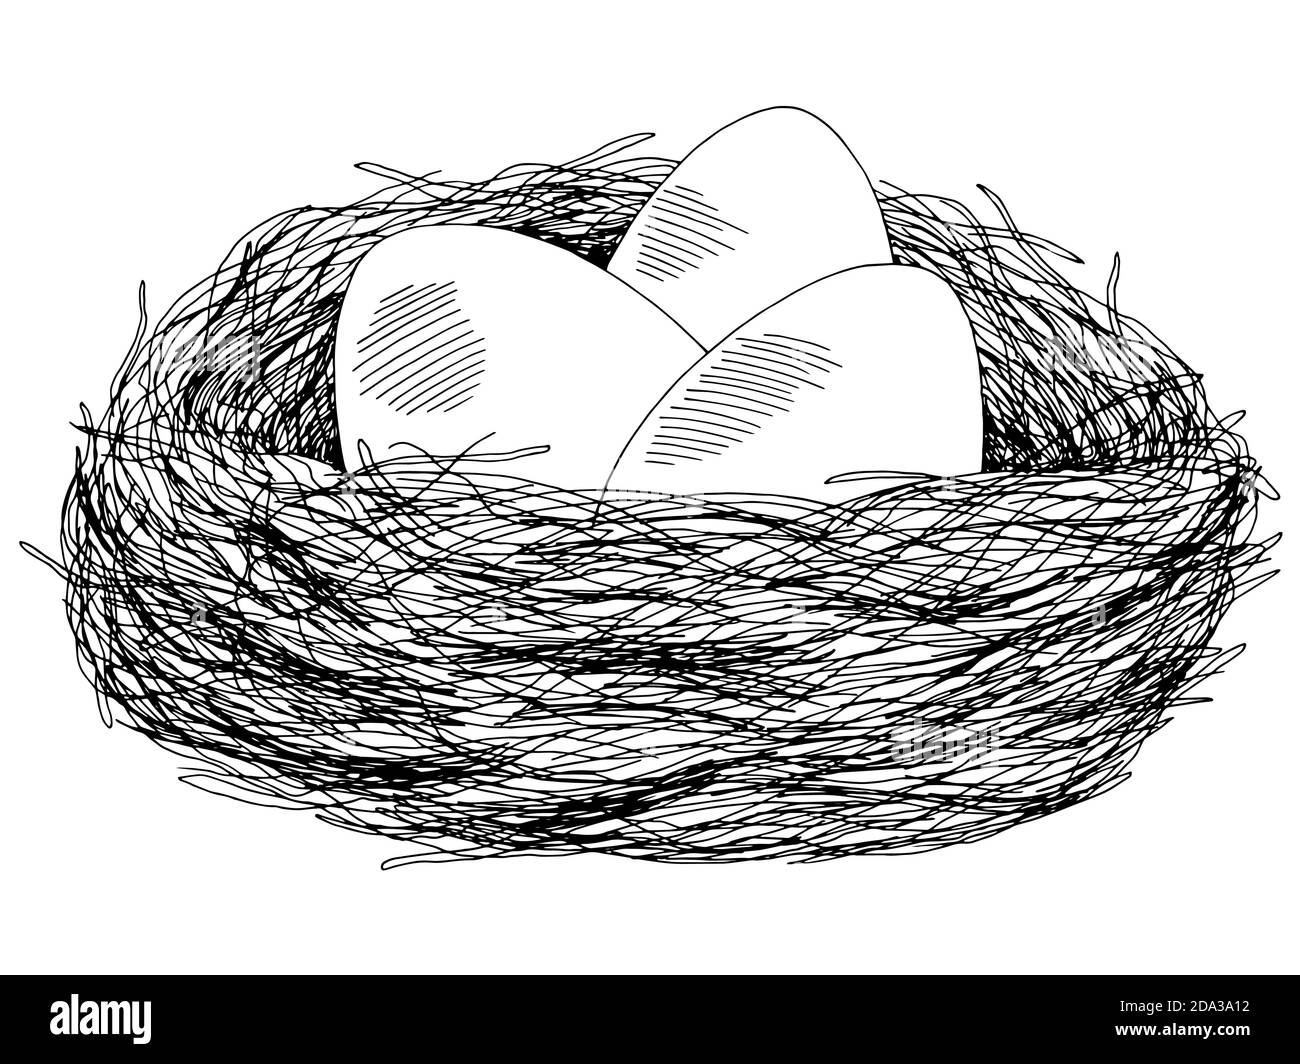 Eier Nest Grafik schwarz weiß isoliert Skizze Illustration Vektor Stock Vektor